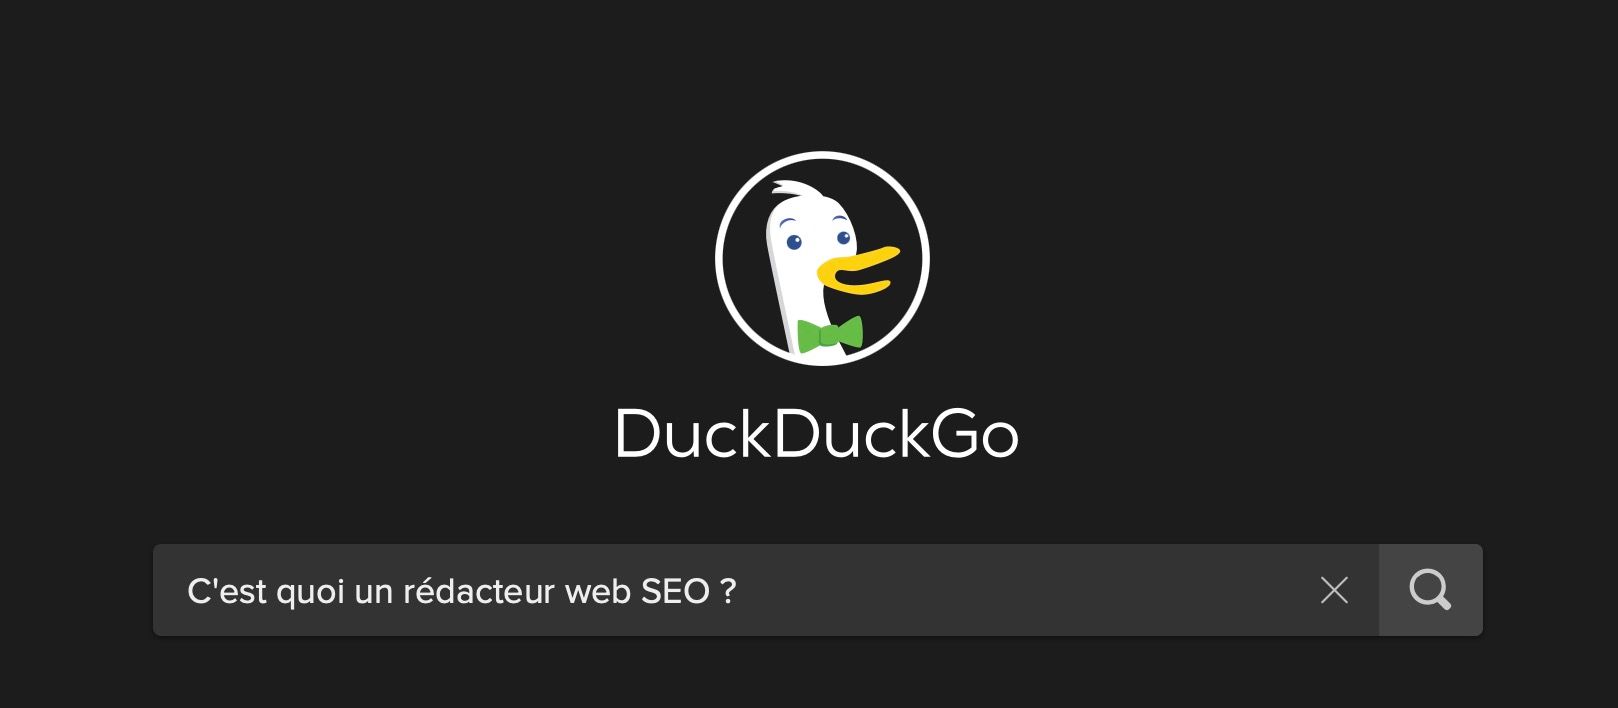 C'est quoi un rédacteur web SEO demandé à un moteur de recherche (DuckDuckGo)